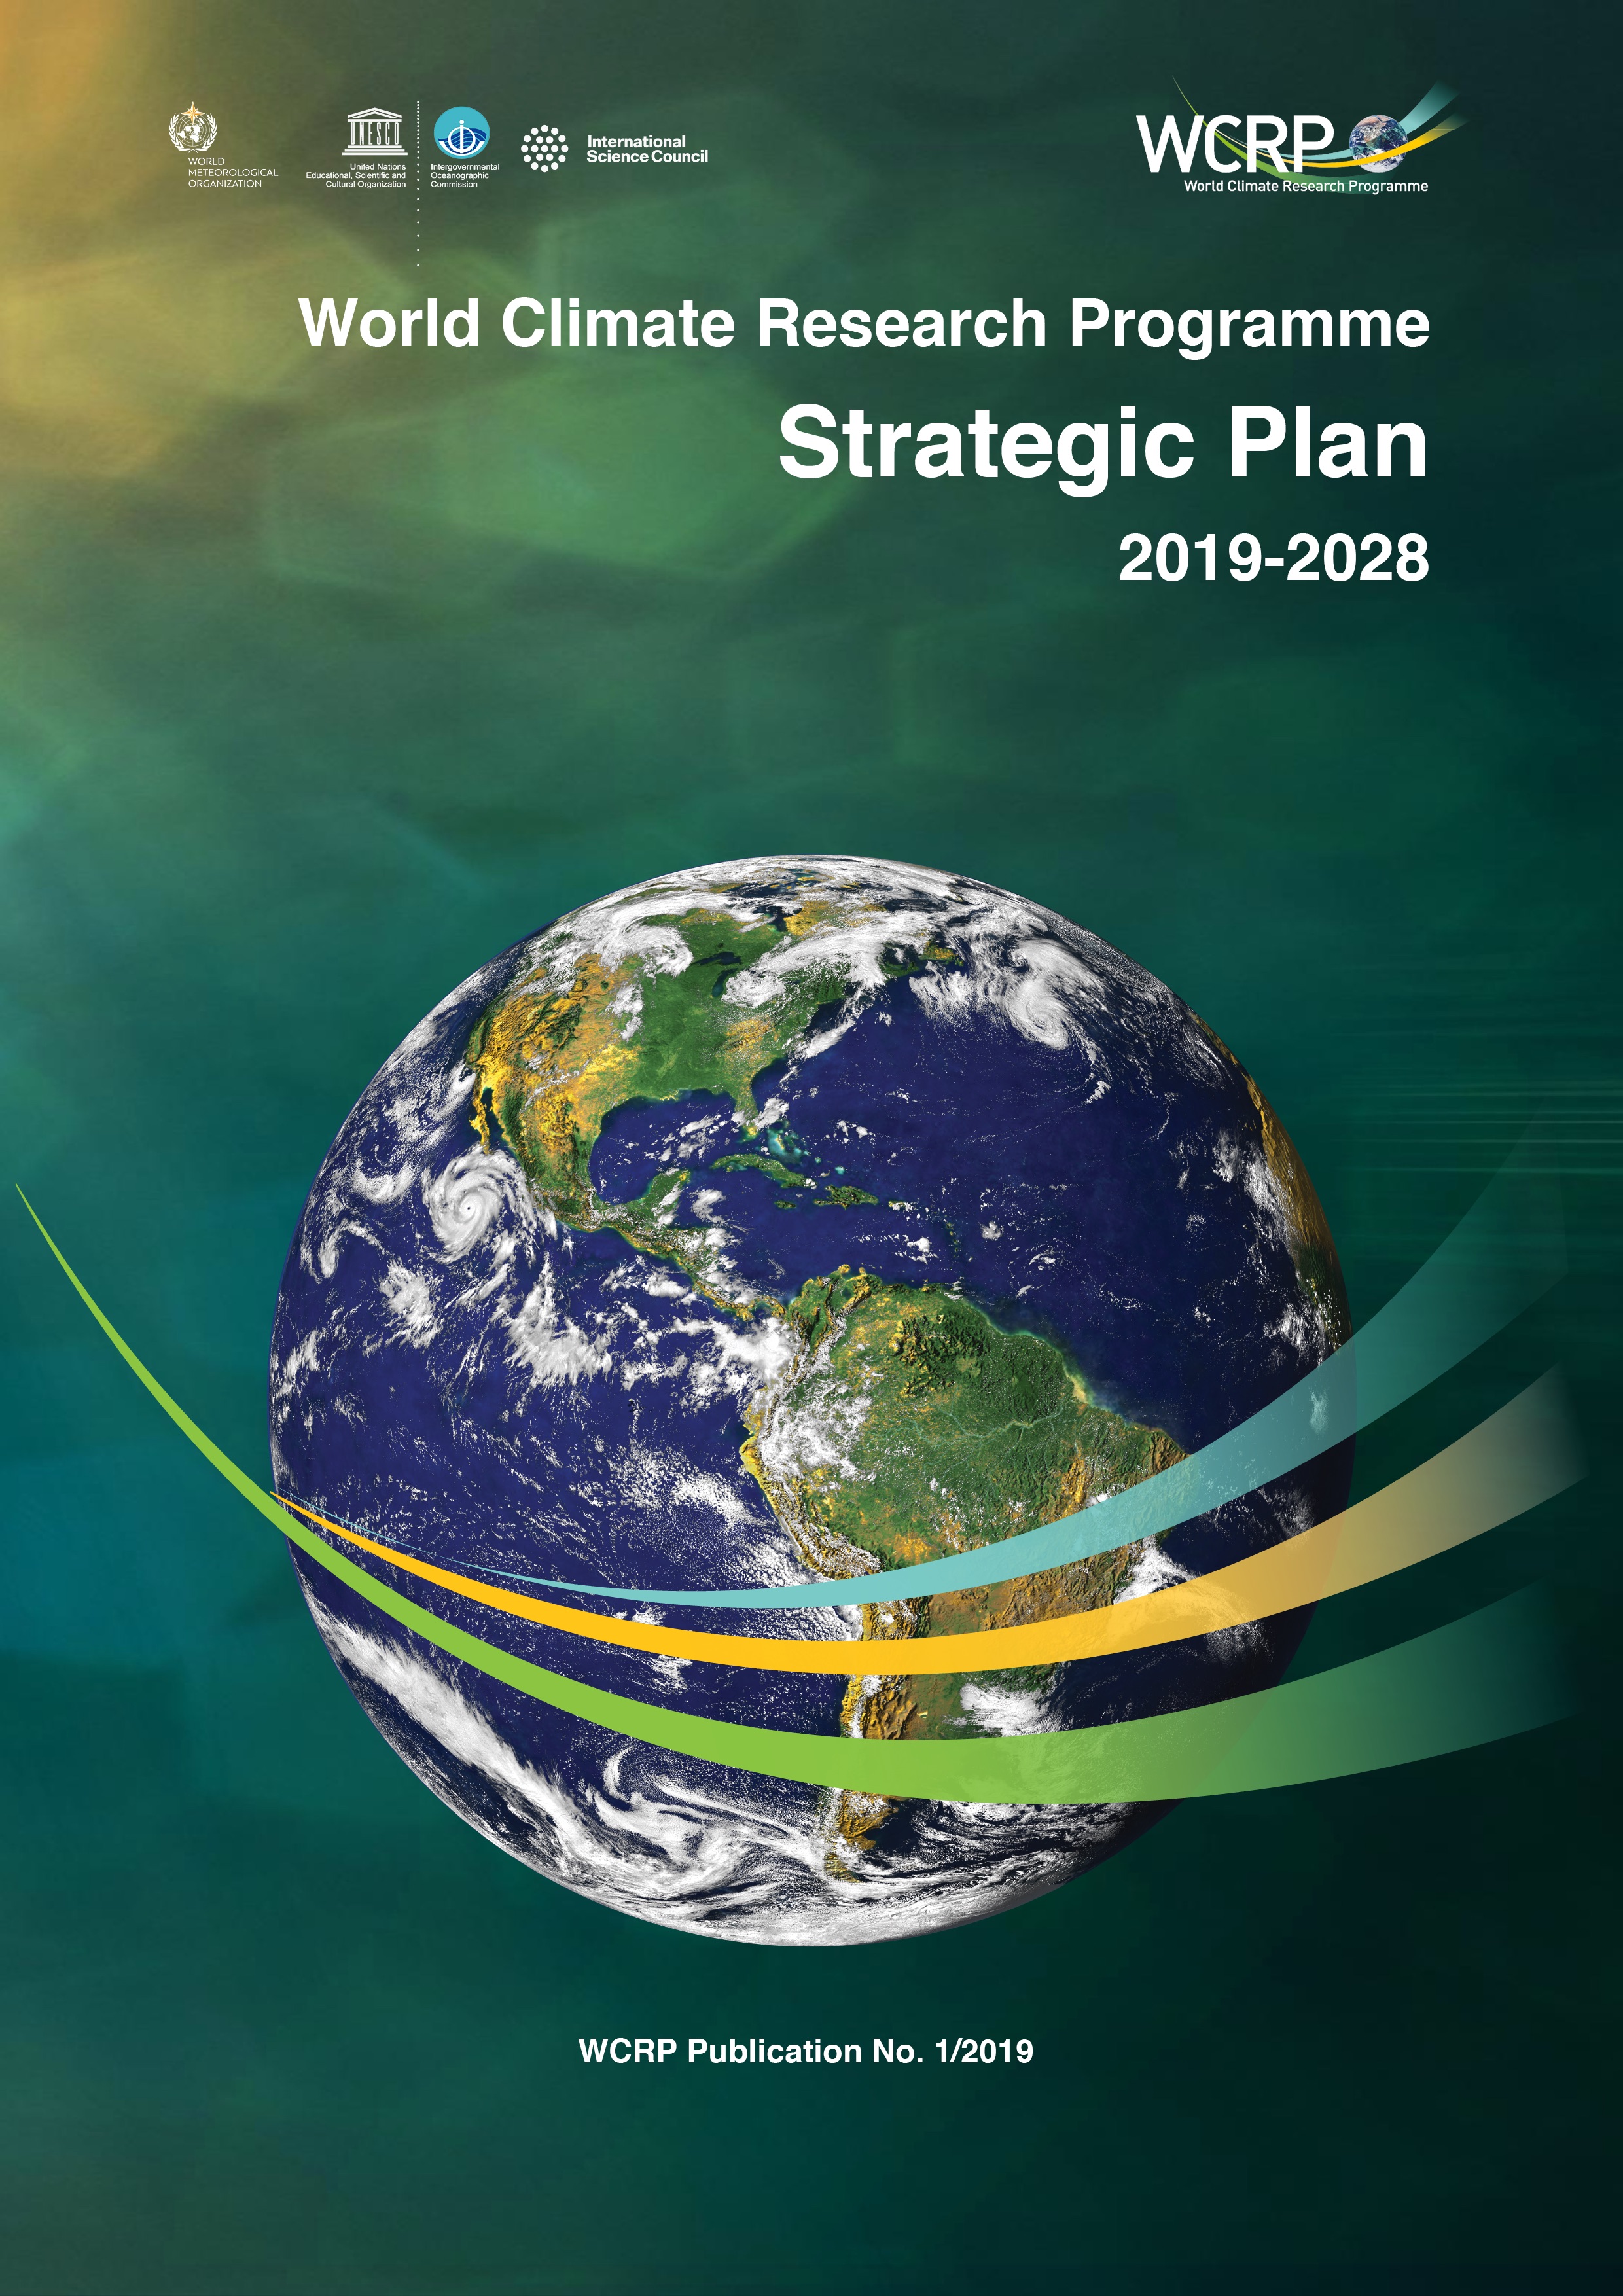 WCRP Strategic Plan 